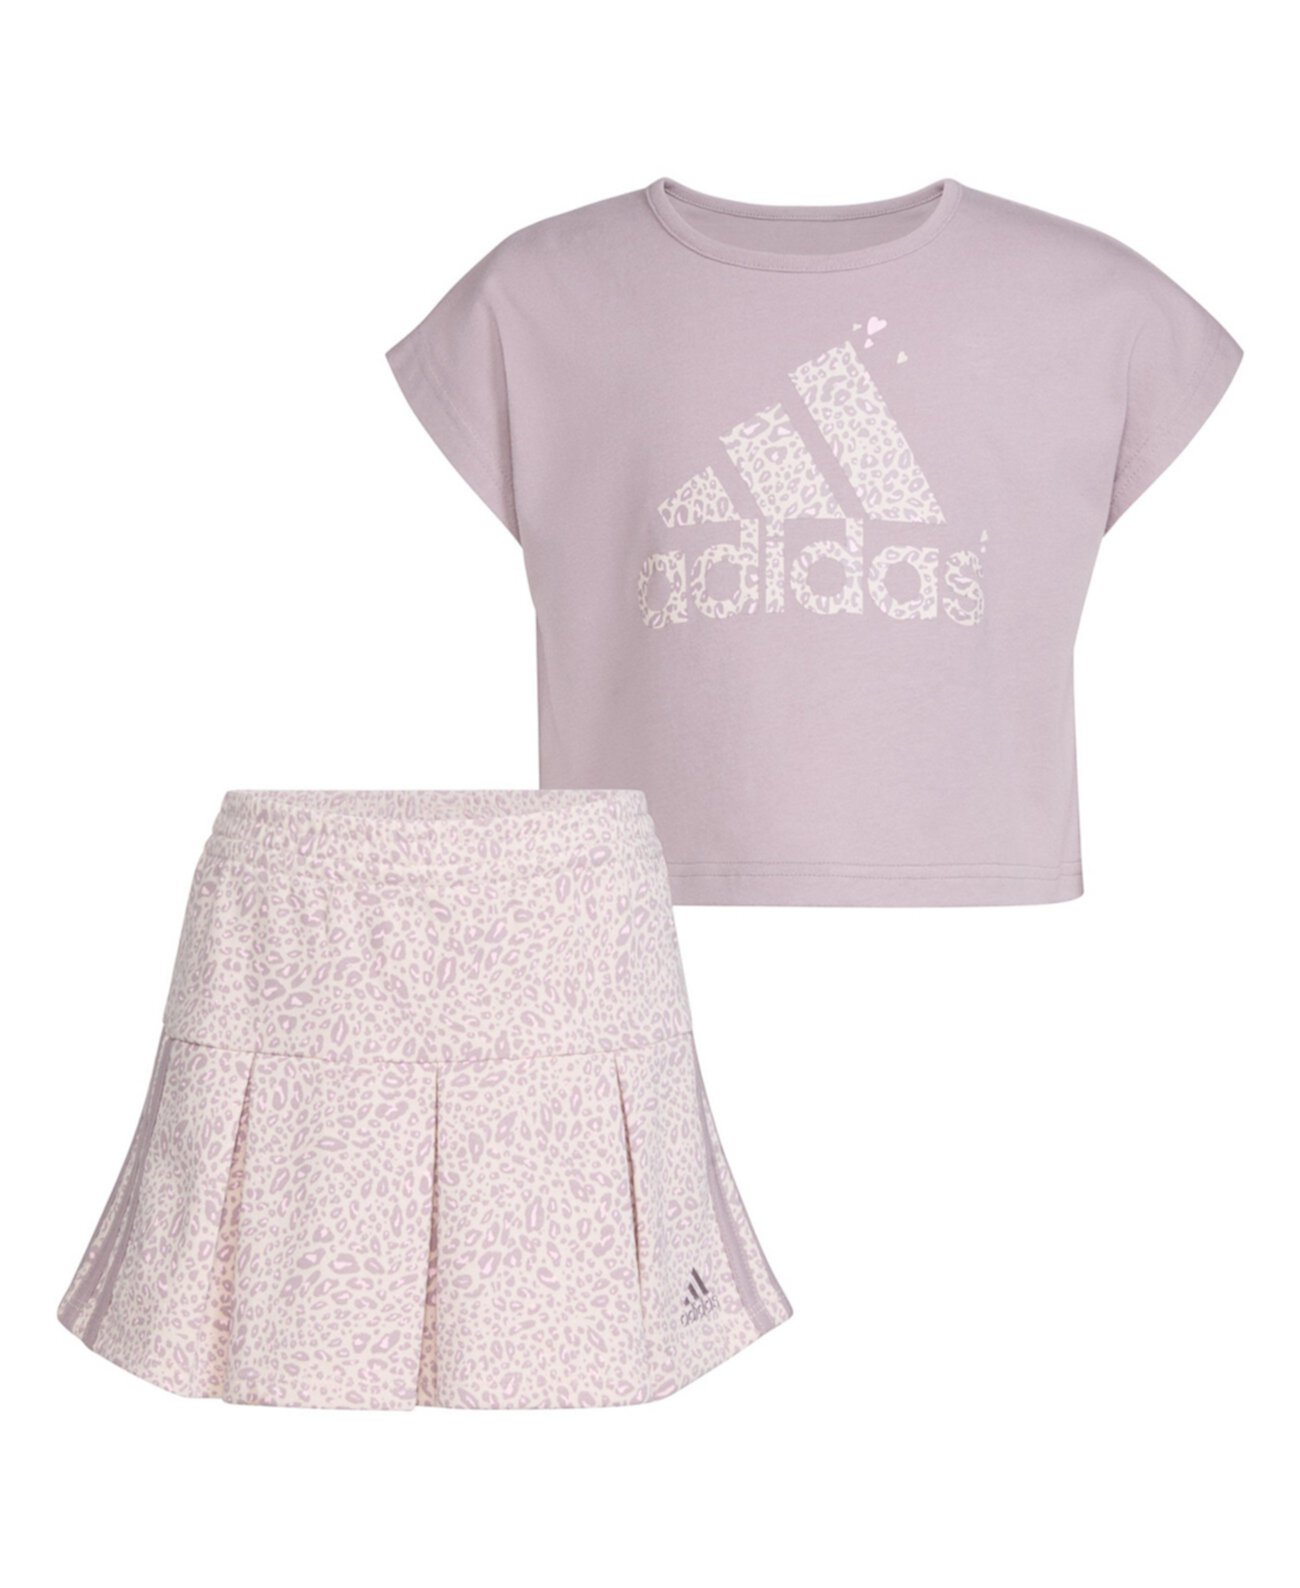 Топ без рукавов для девочек и юбка с принтом для маленьких девочек, комплект из 2 предметов Adidas